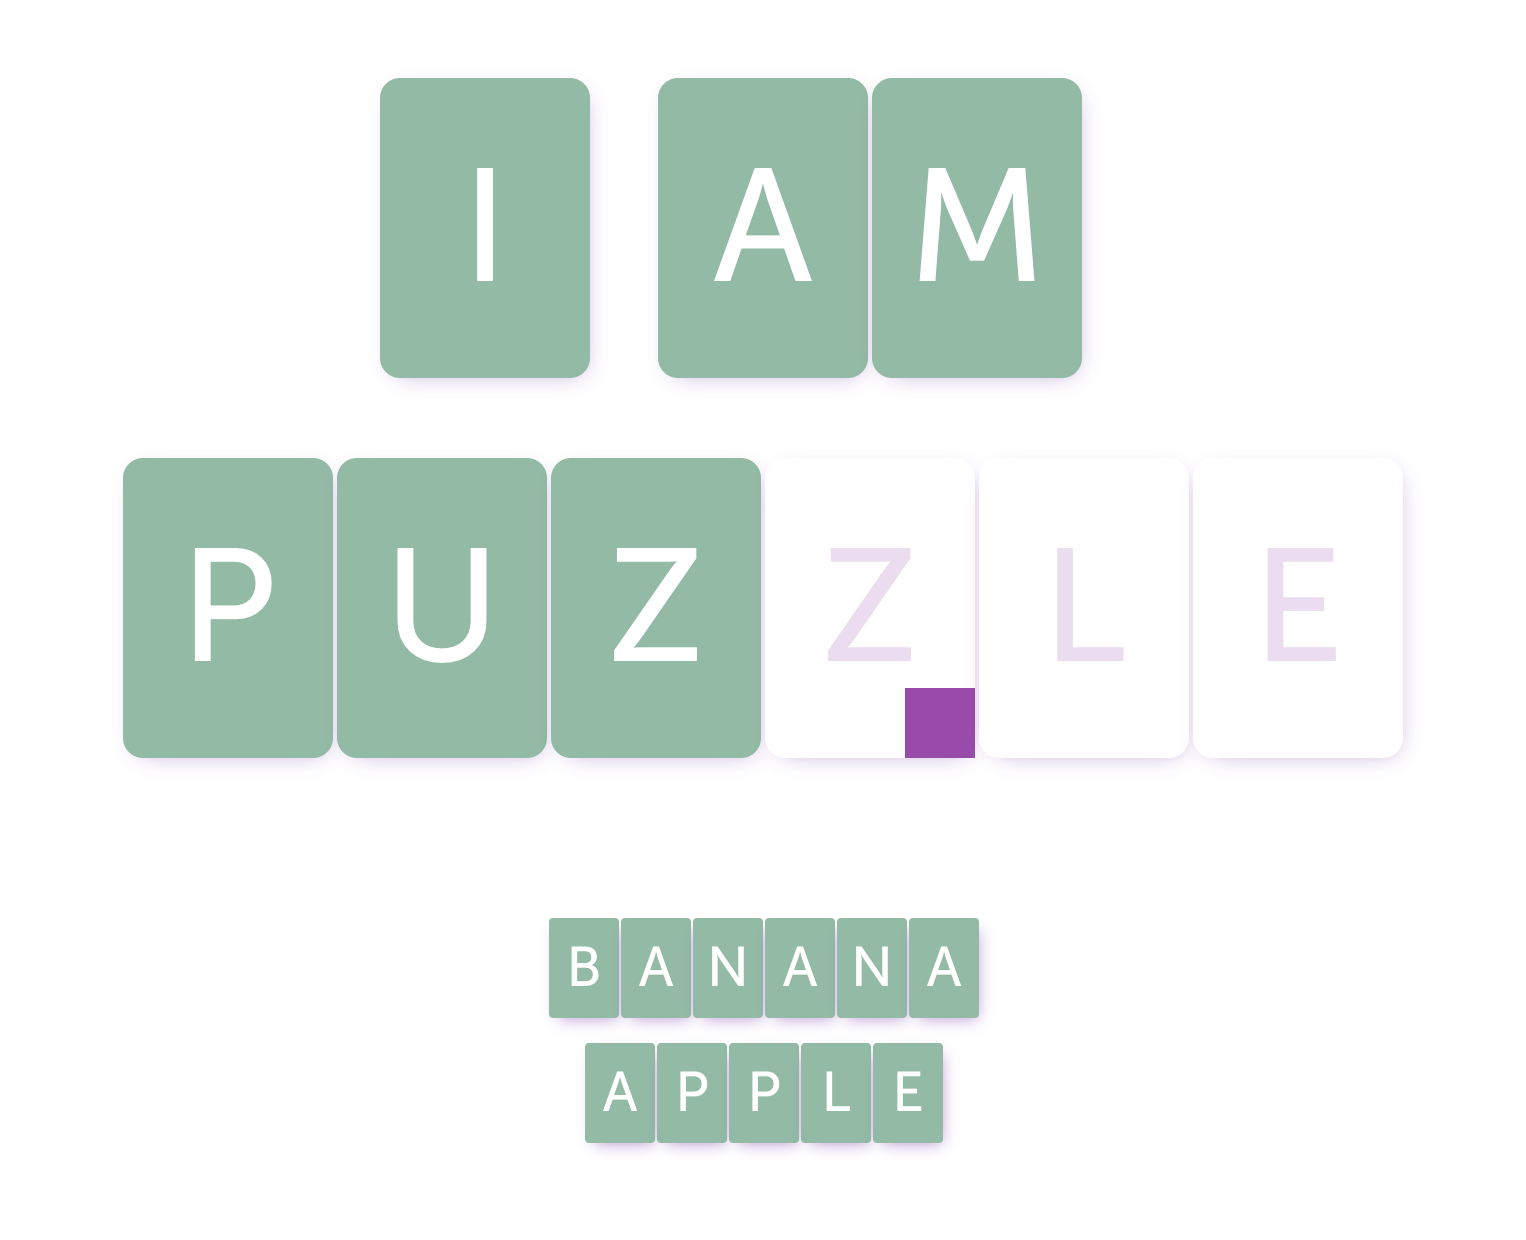 Puzzel. Créer des puzzles en ligne gratuitement – Les Outils Tice